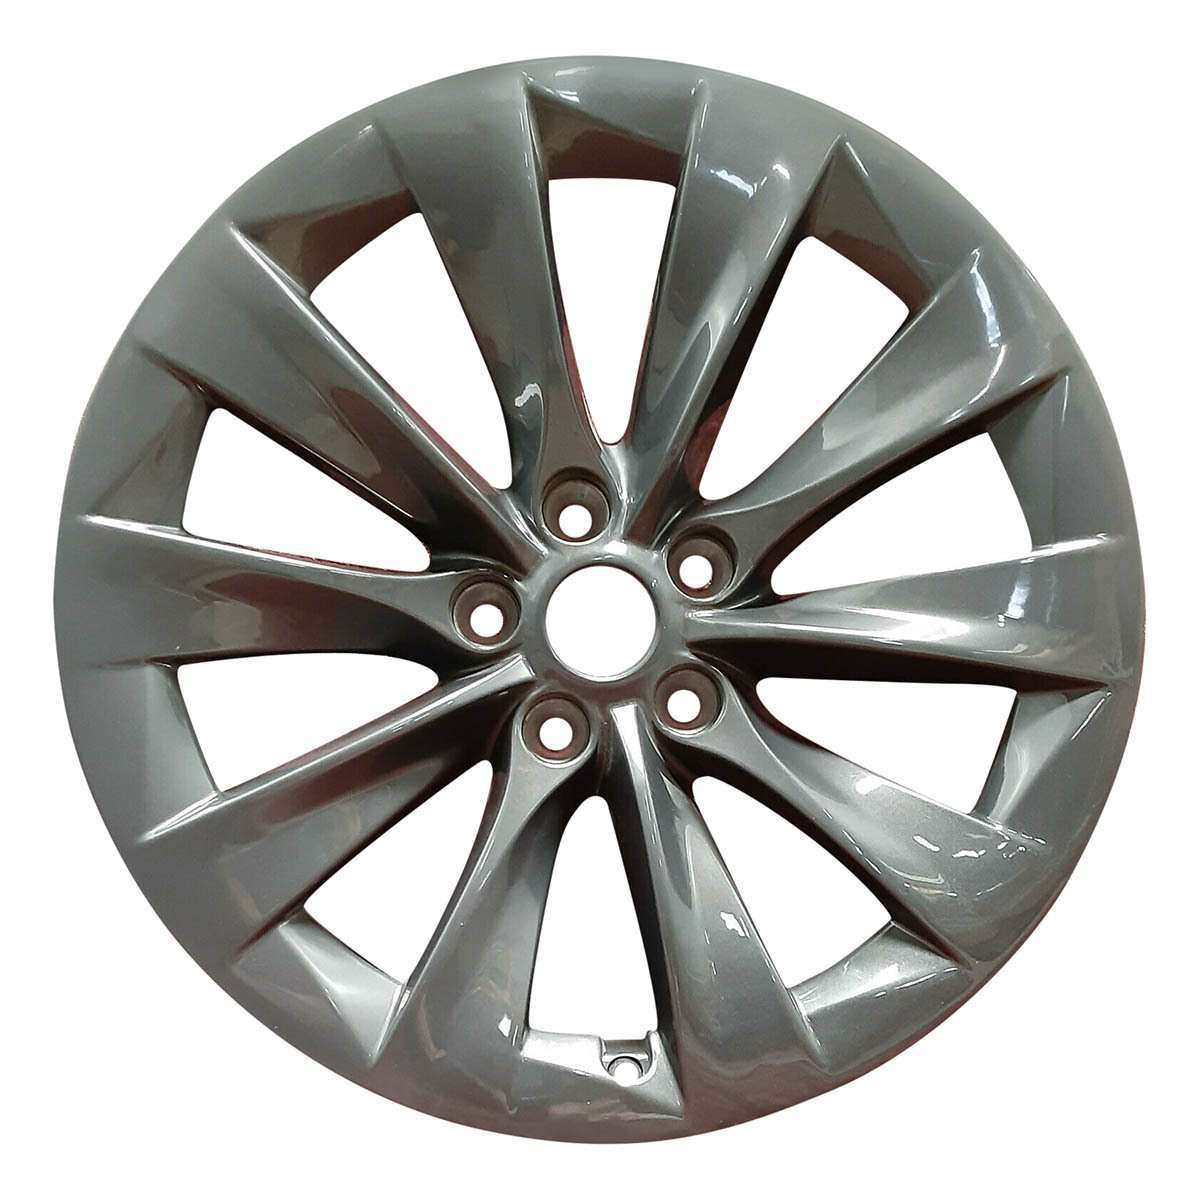 2013 Tesla Model S 19" OEM Wheel Rim Slipstream W97755C